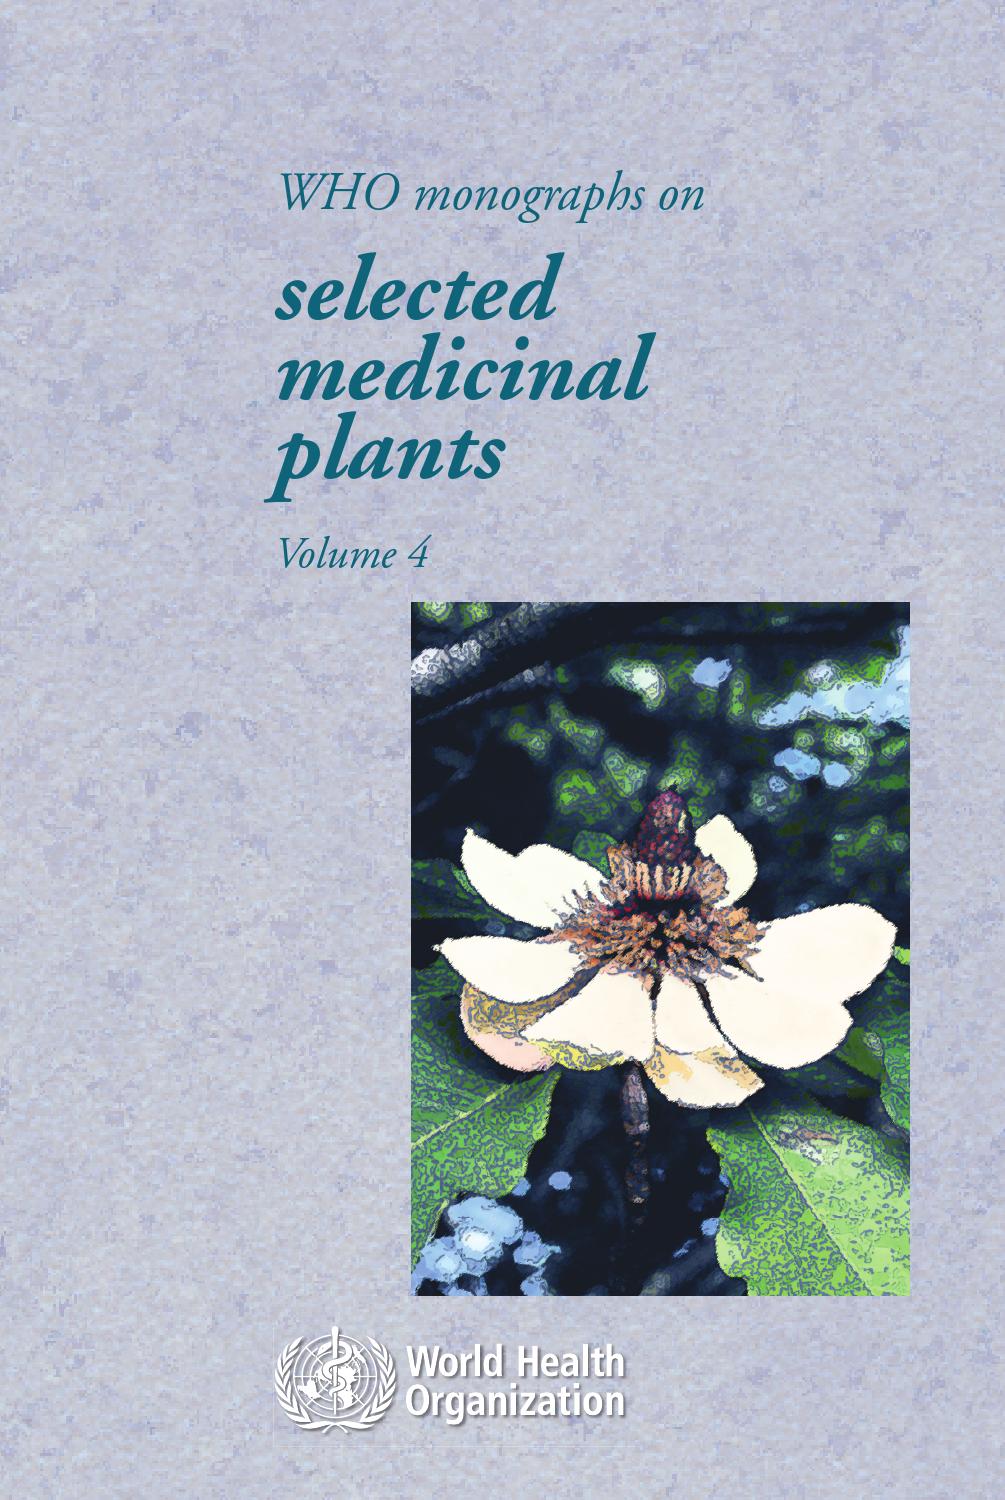 SchÃ¶ne Gartengestaltung Einzigartig Plantas Medicinales by Jannet Cao issuu